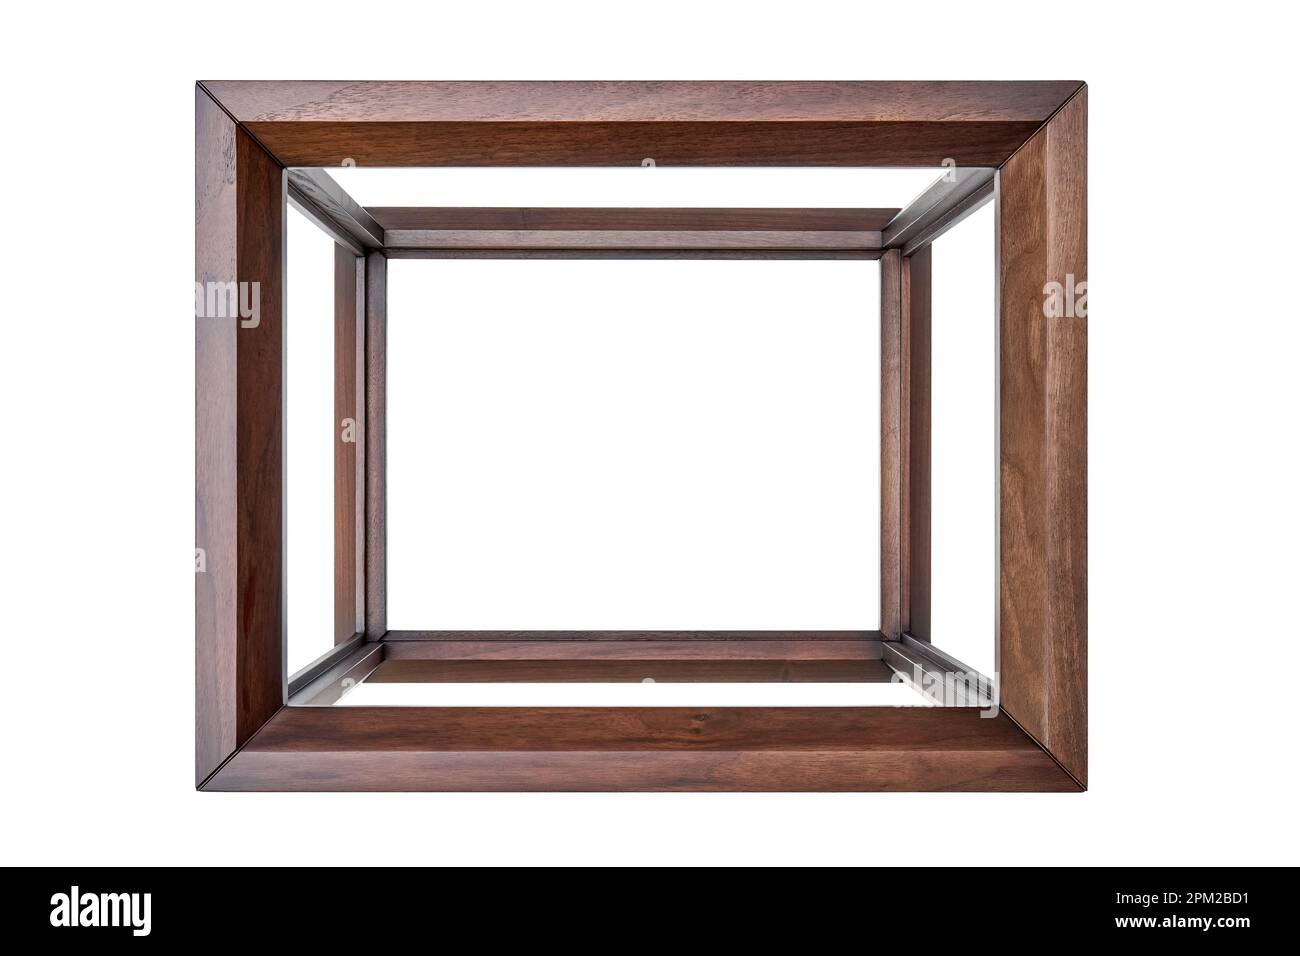 Holzrahmen des Nachttischs aus massivem Walnussholz isoliert auf weißem Hintergrund. Winkelgelenk der Bretter an Dübeln Stockfoto